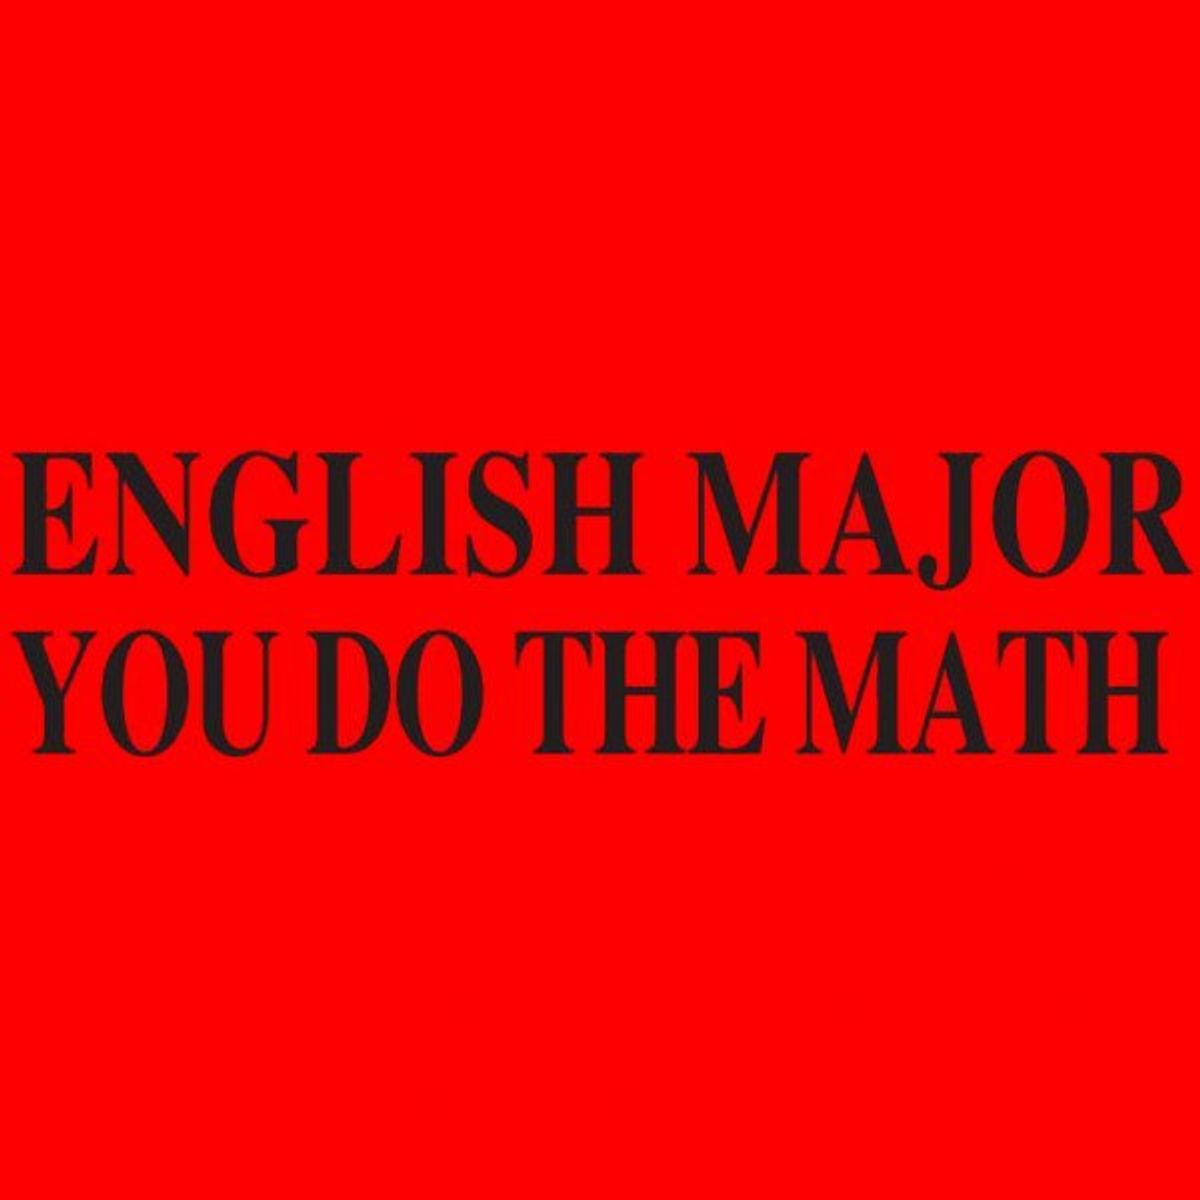 The Life Of An English Major